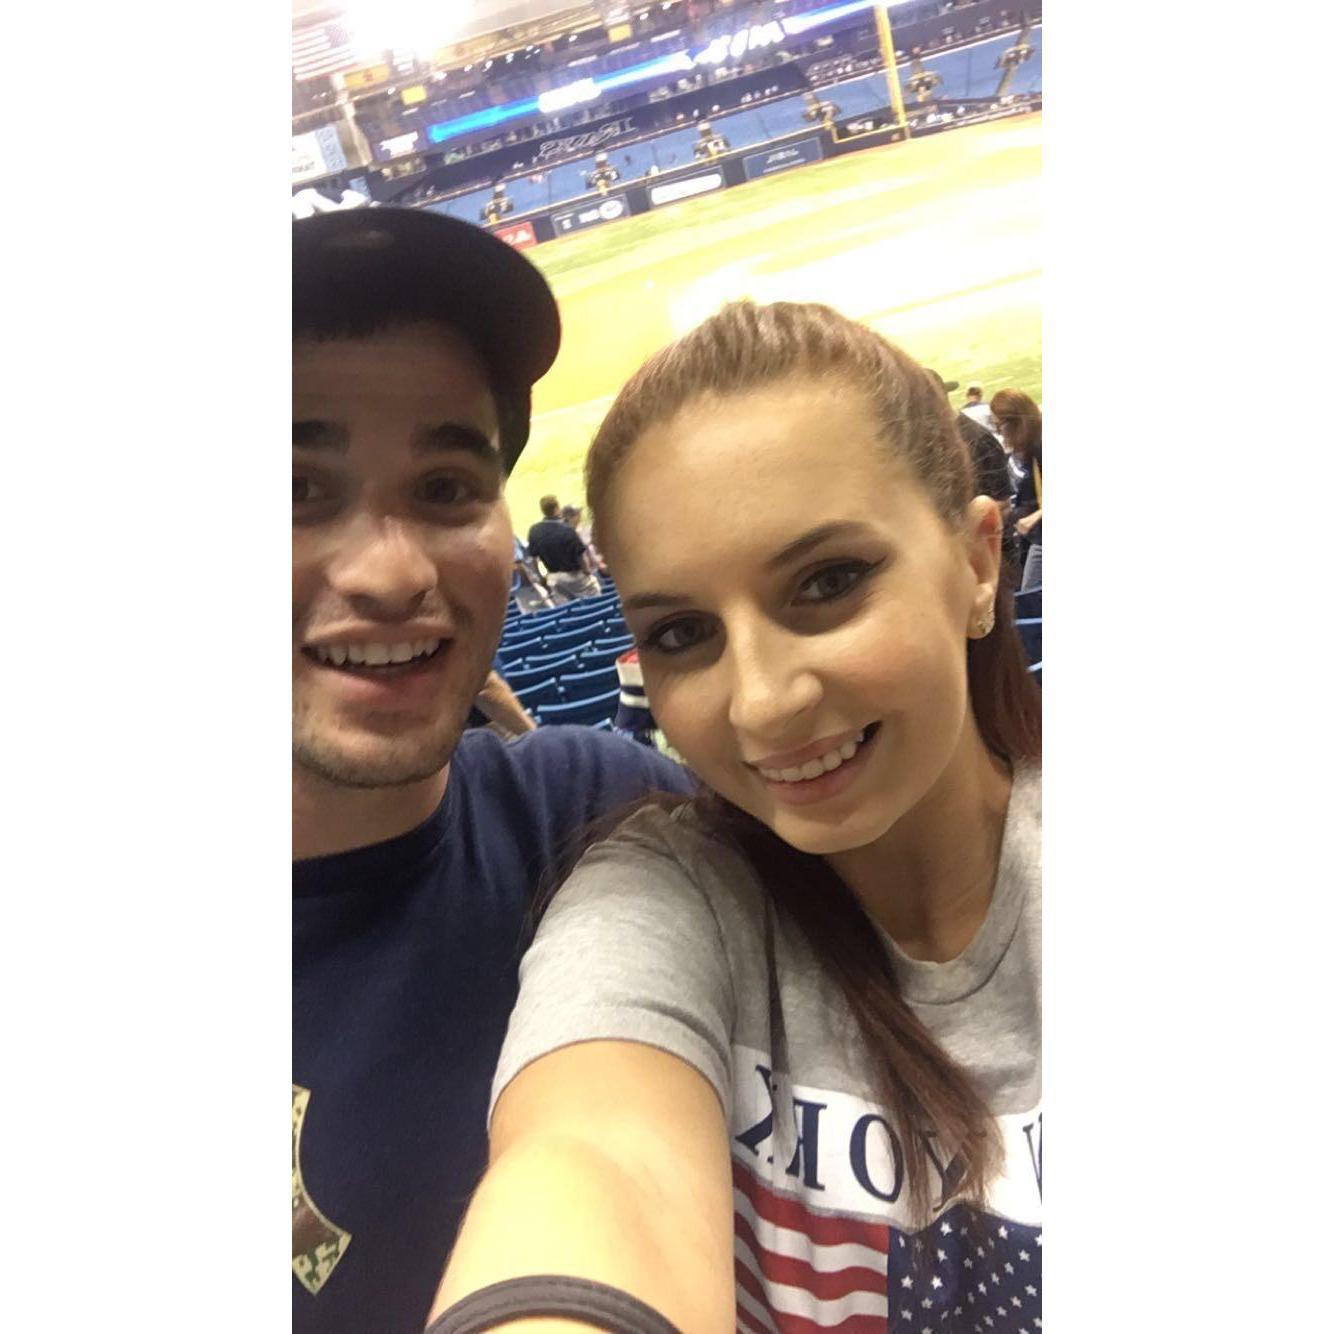 Yankees Game 9/22/16